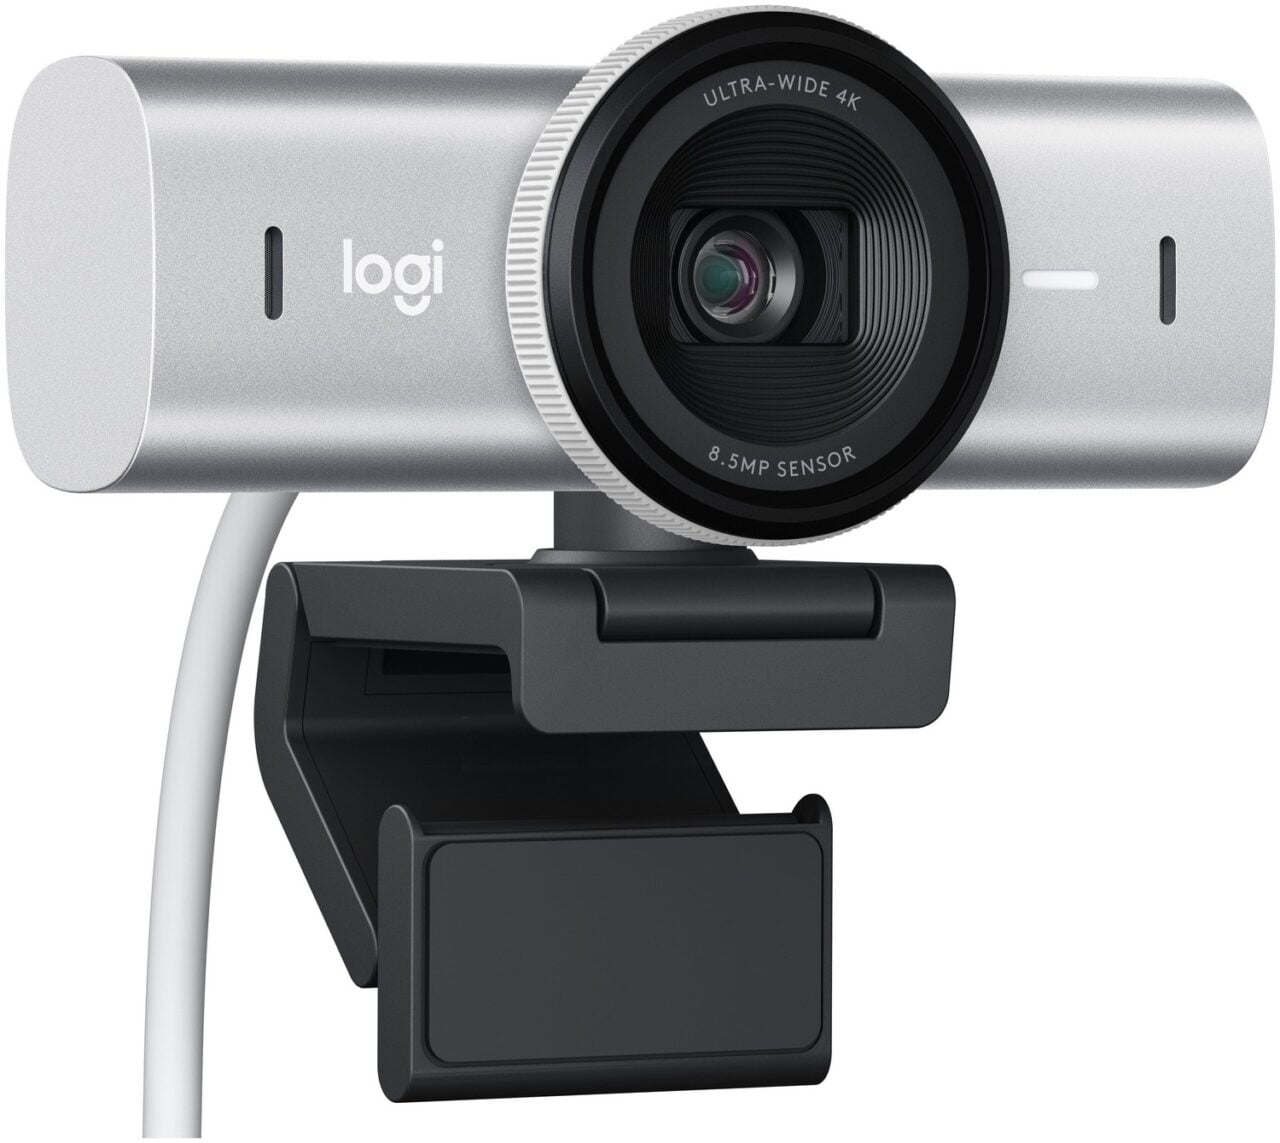 Kamera internetowa marki Logitech z szerokokątnym obiektywem 4K i sensorem 8.5MP, umocowana na klipsie do monitora.